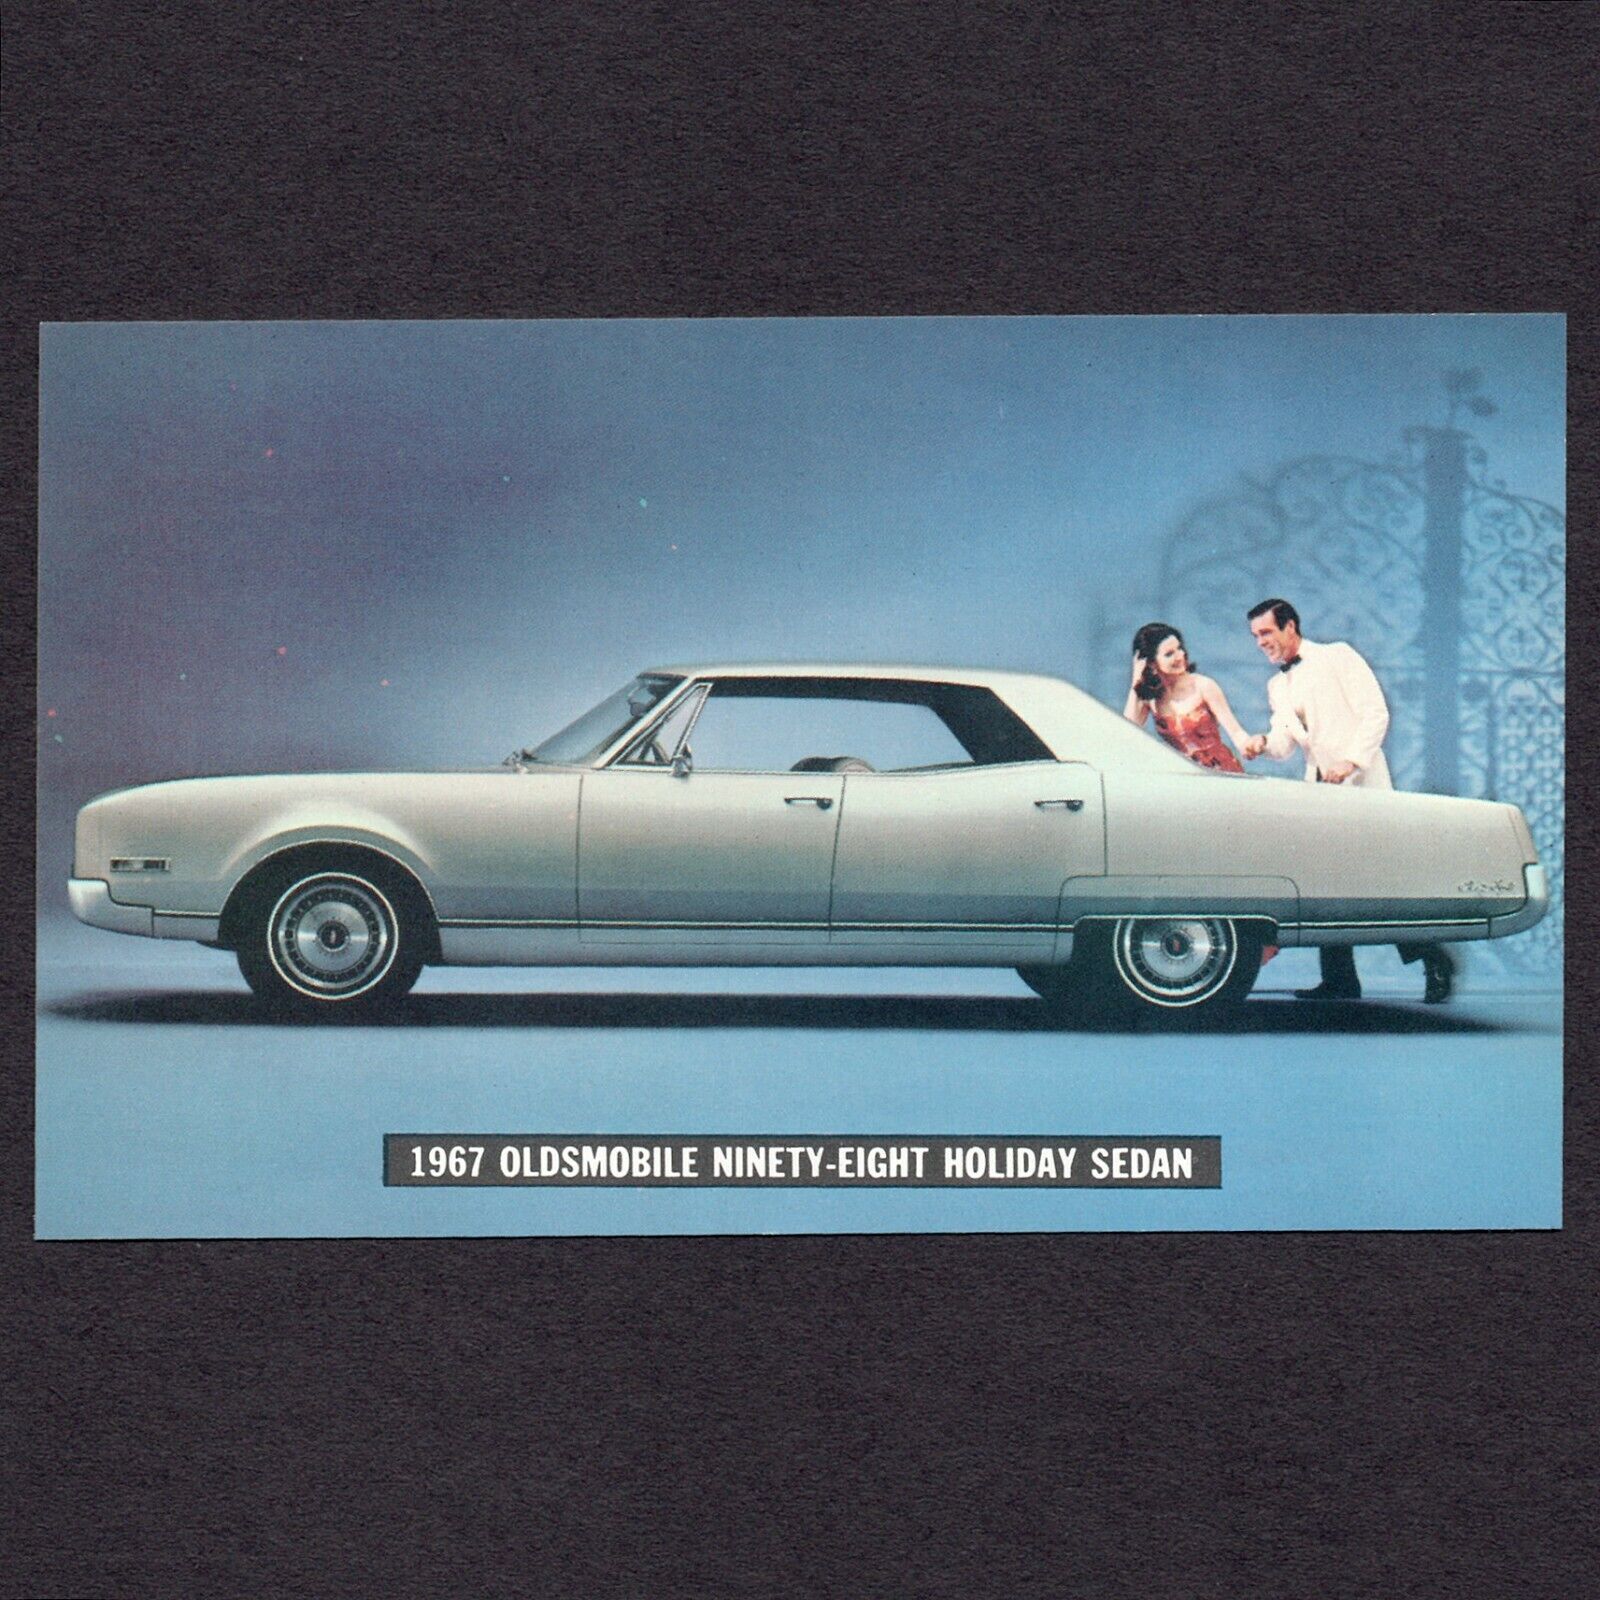 1967 Oldsmobile Ninety-Eight Holiday Sedan: Original Dealer Postcard UNUSED VG+